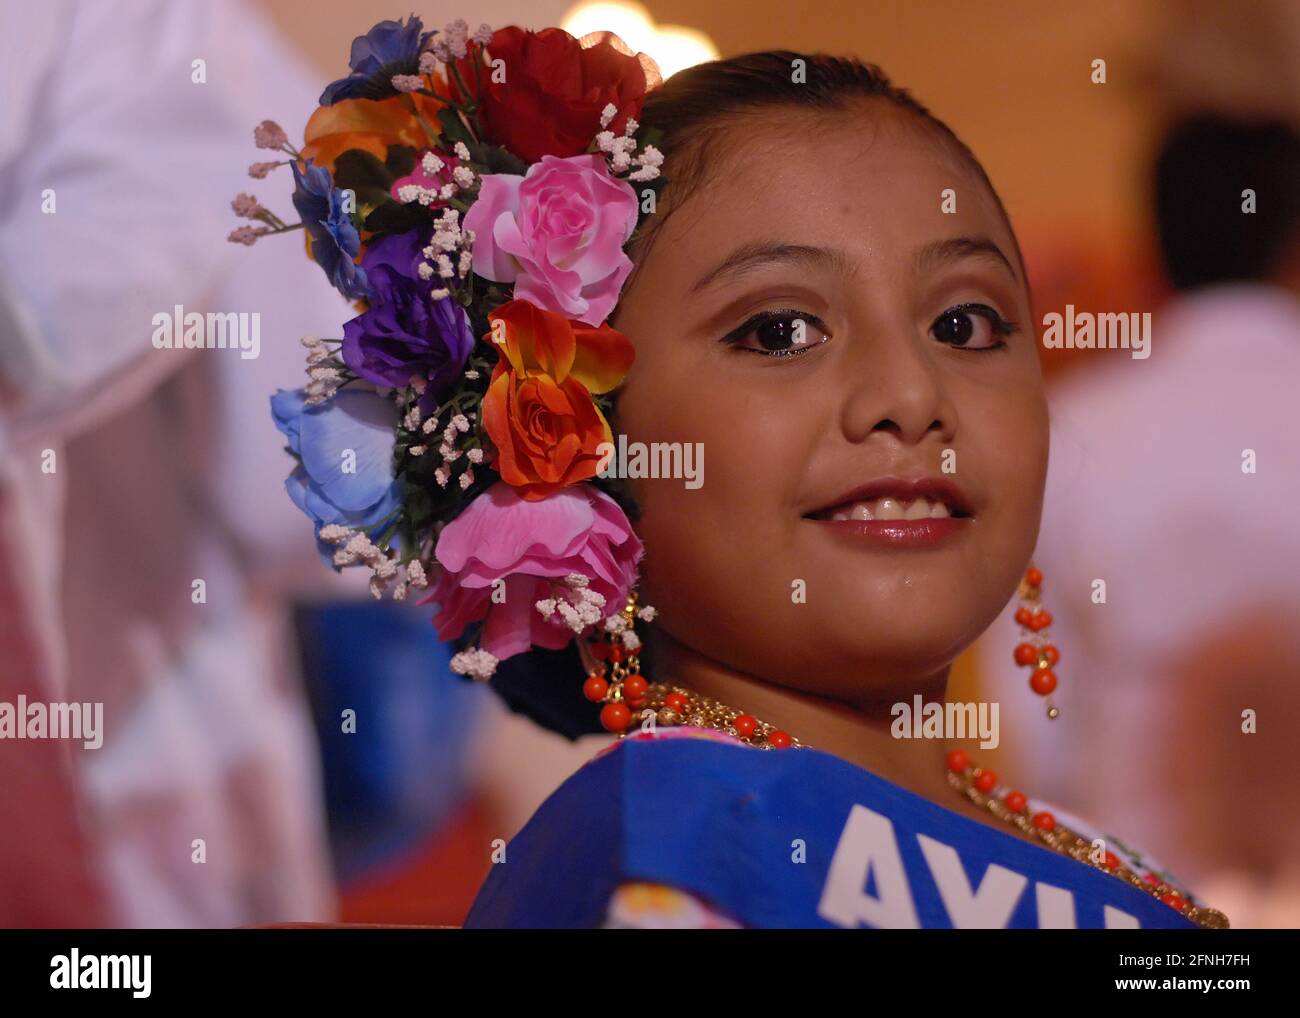 Porträt einer jungen und unbekannten lateinischen Tänzerin, die lächelt und das Kleid der Stadt Merida in Mexiko trägt, auf ihrem Kopf hat sie eine Krone aus bunten Blumen d Stockfoto